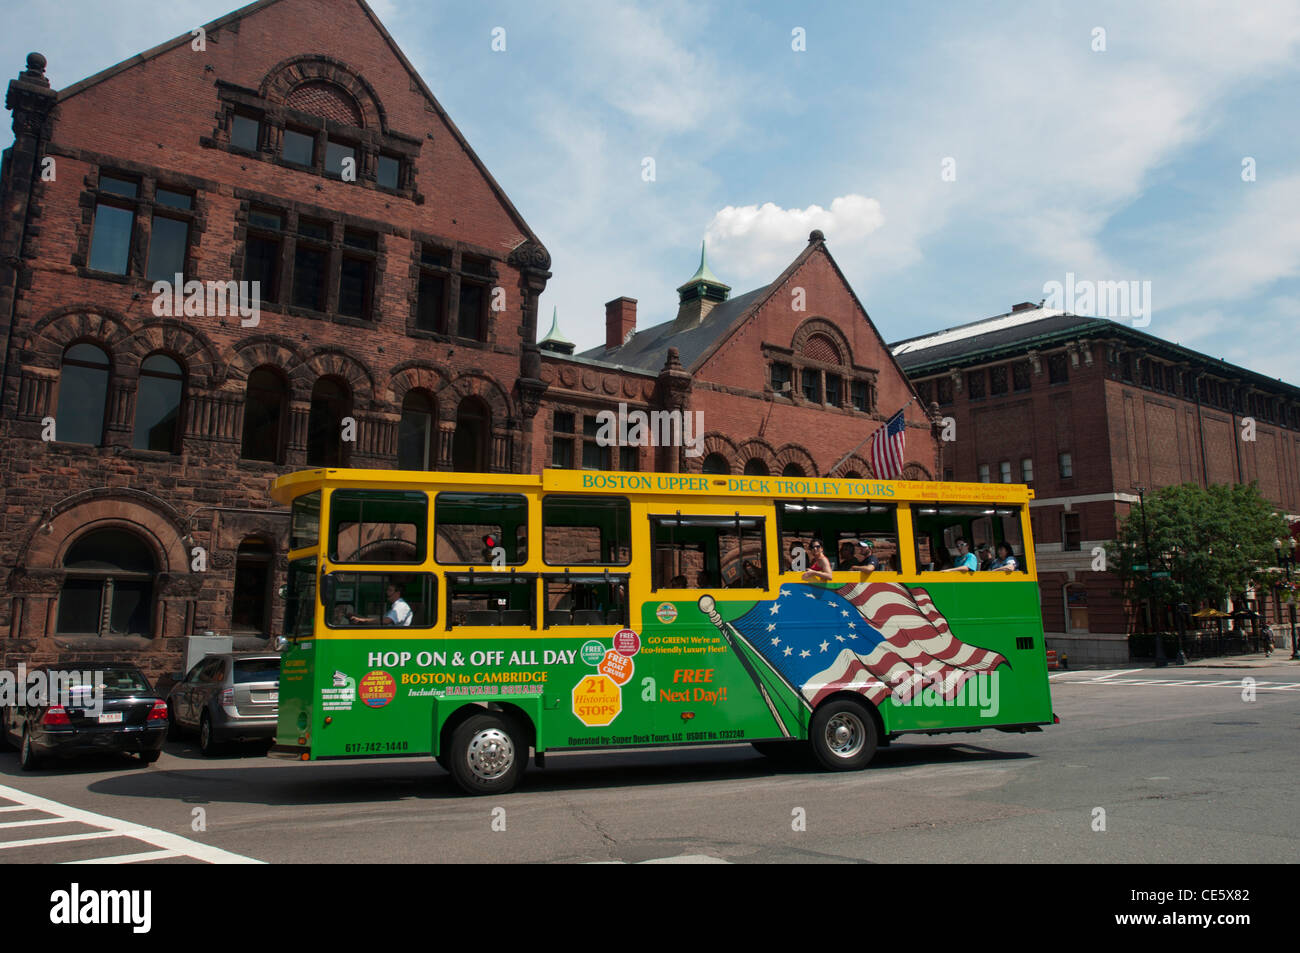 Gelbe und grüne Boston Upper Deck Trolley Tours Bus, Boston, Massachusetts, Vereinigte Staaten, USA Stockfoto